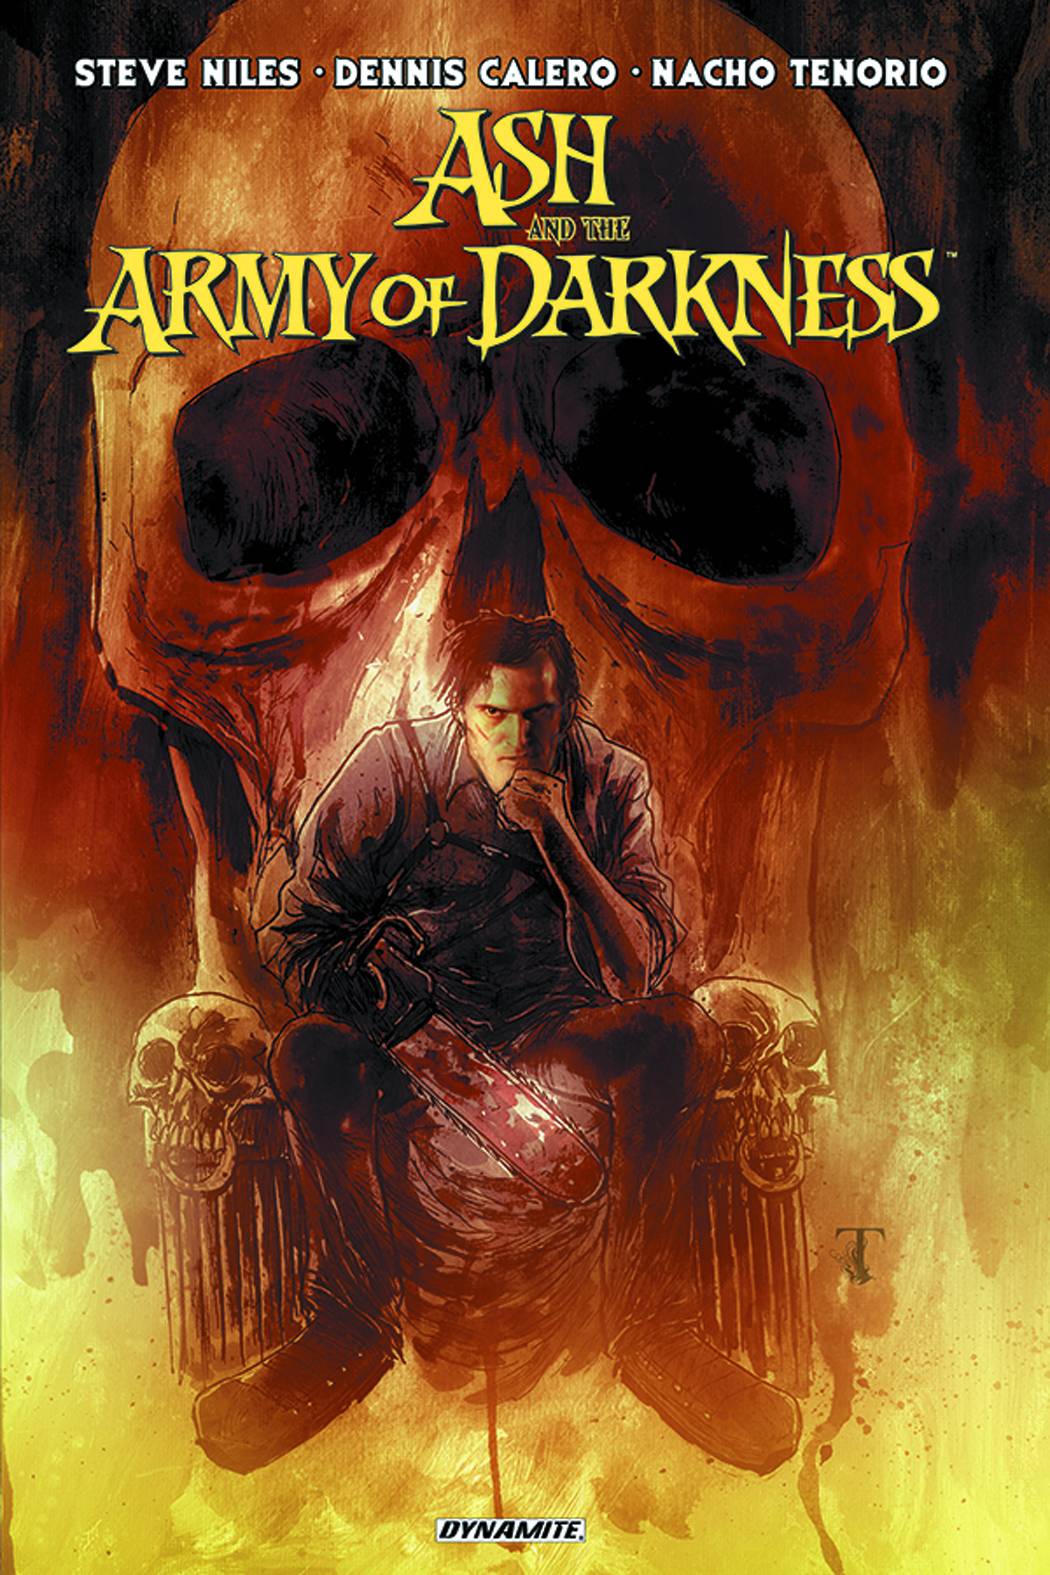 Тьма обложка. Army of Darkness (2012). Истории армии тьмы #1 (Dynamite Entertainment, 2013). Бескрайняя тьма обложки.